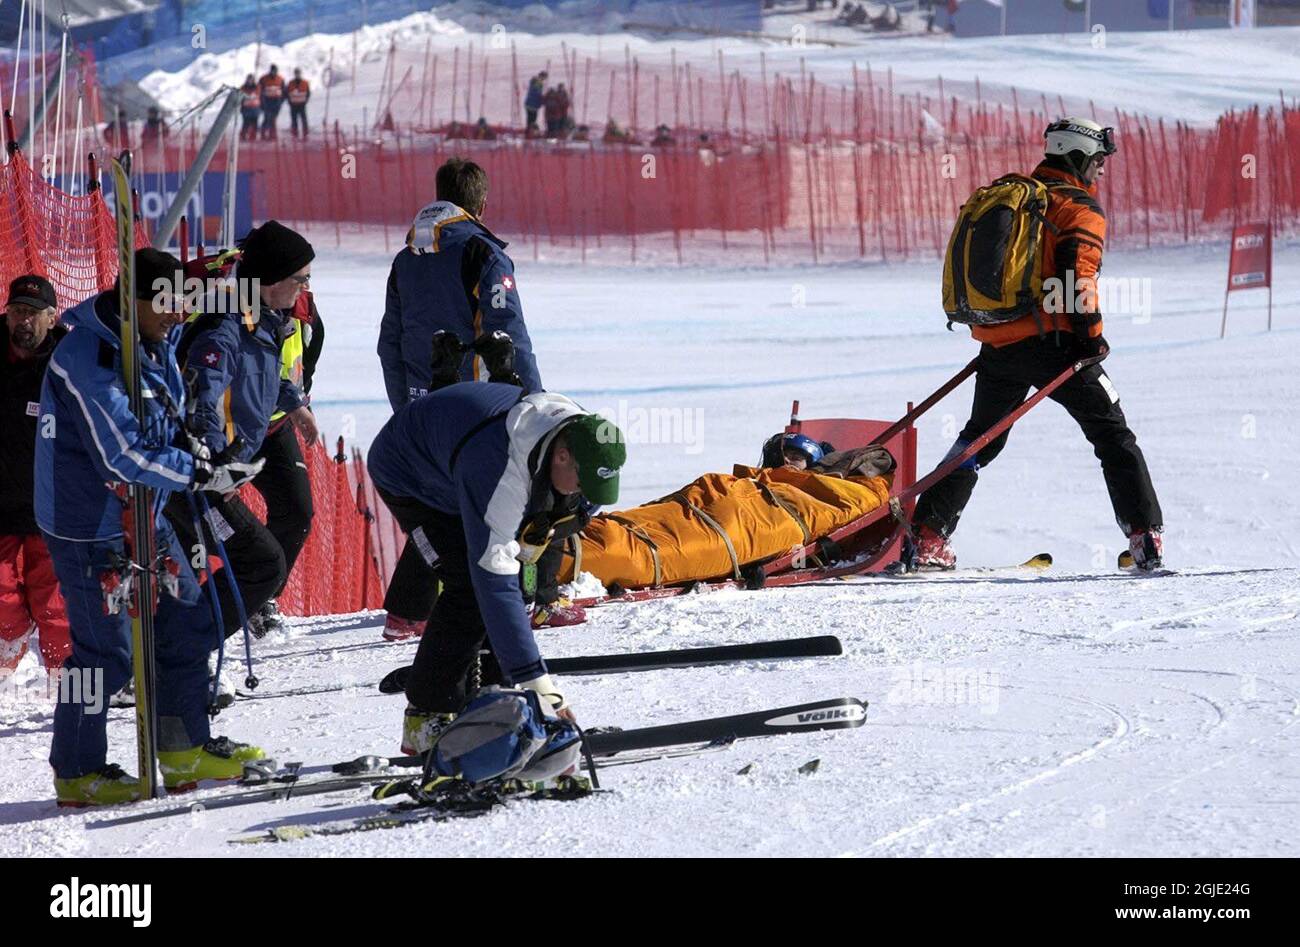 Lucia Recchia, de l'Italie, s'est écrasée dans la clôture après un saut dans la descente des femmes aux Championnats du monde de ski alpin à Saint-Moritz, en Suisse, le 9 février 2003 Banque D'Images